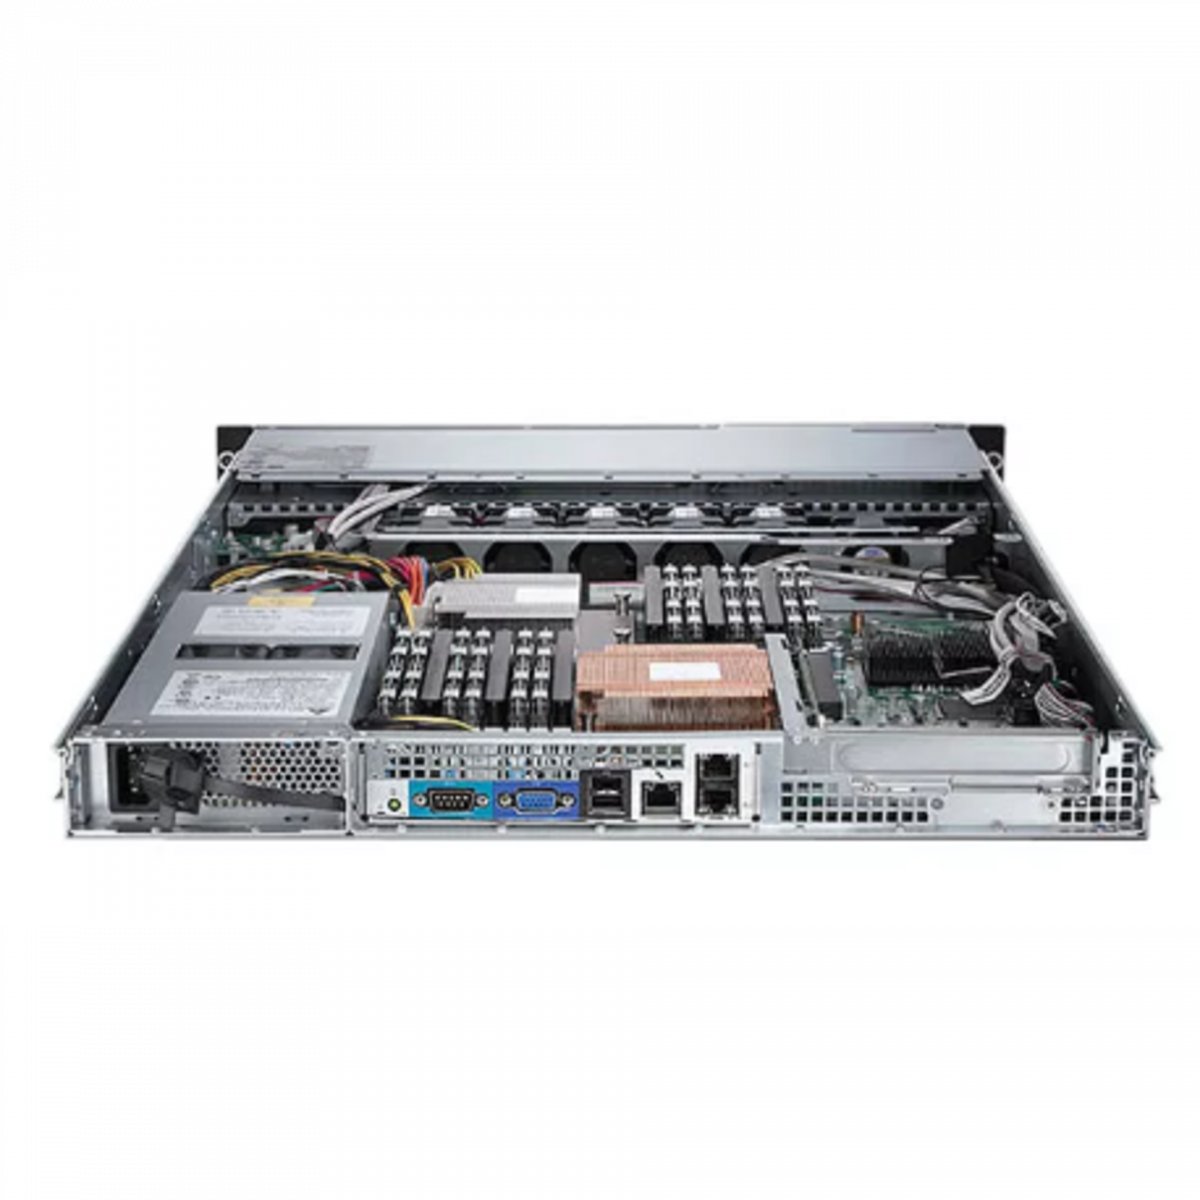 Сервер Dell PowerEdge C1100, 2 процессора Intel Xeon 6С L5639 2.13 GHz, 24GB DRAM